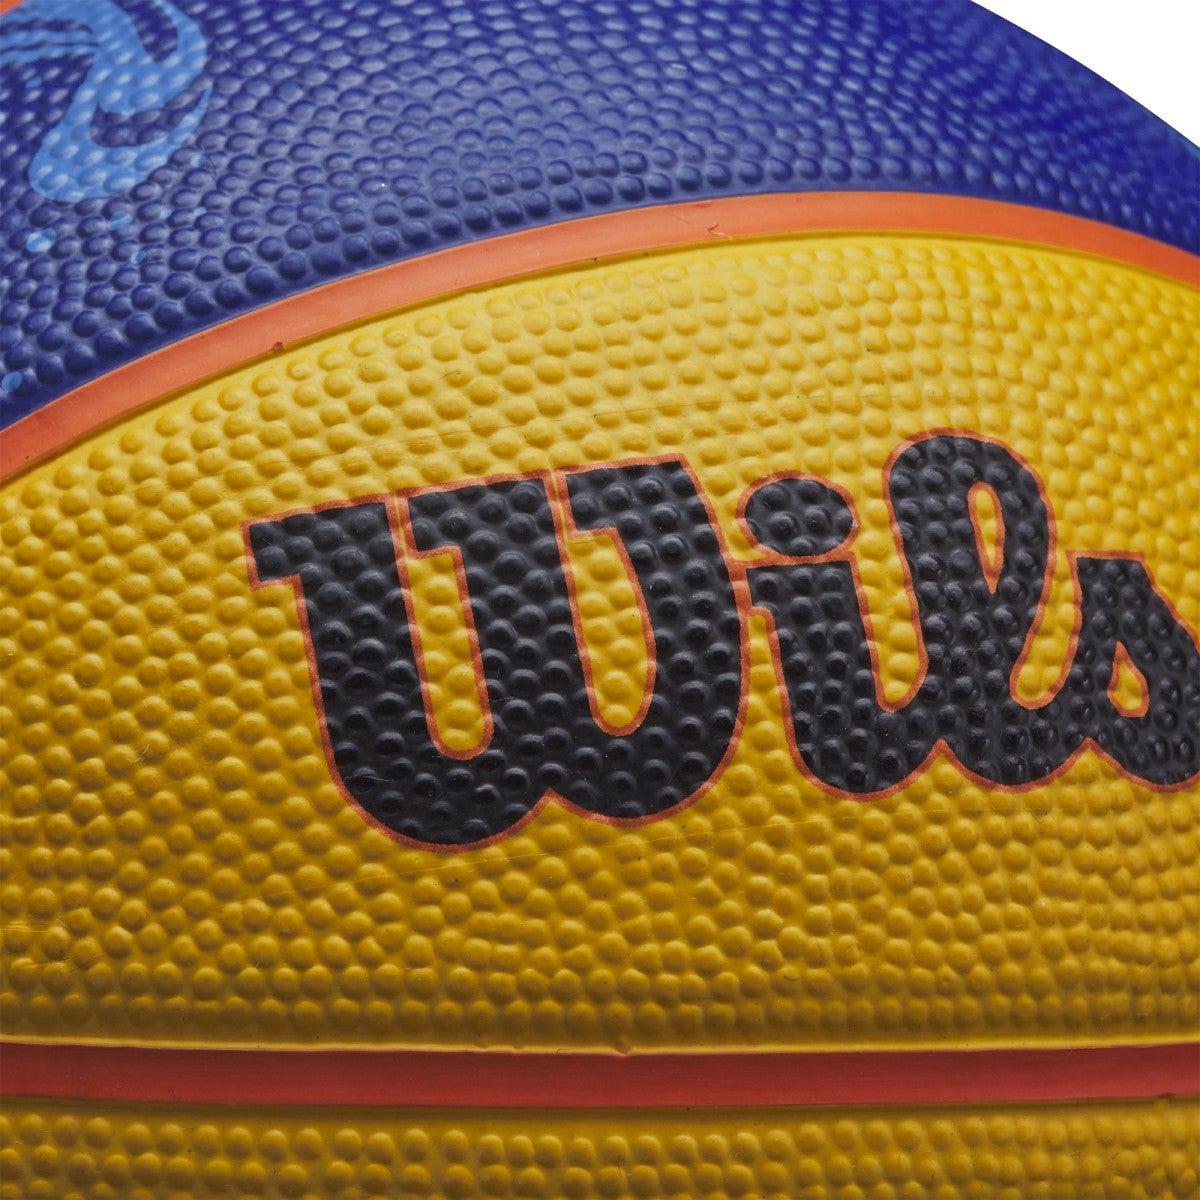 Ballons de basket FIBA 3x3 GameBall Replica Mini